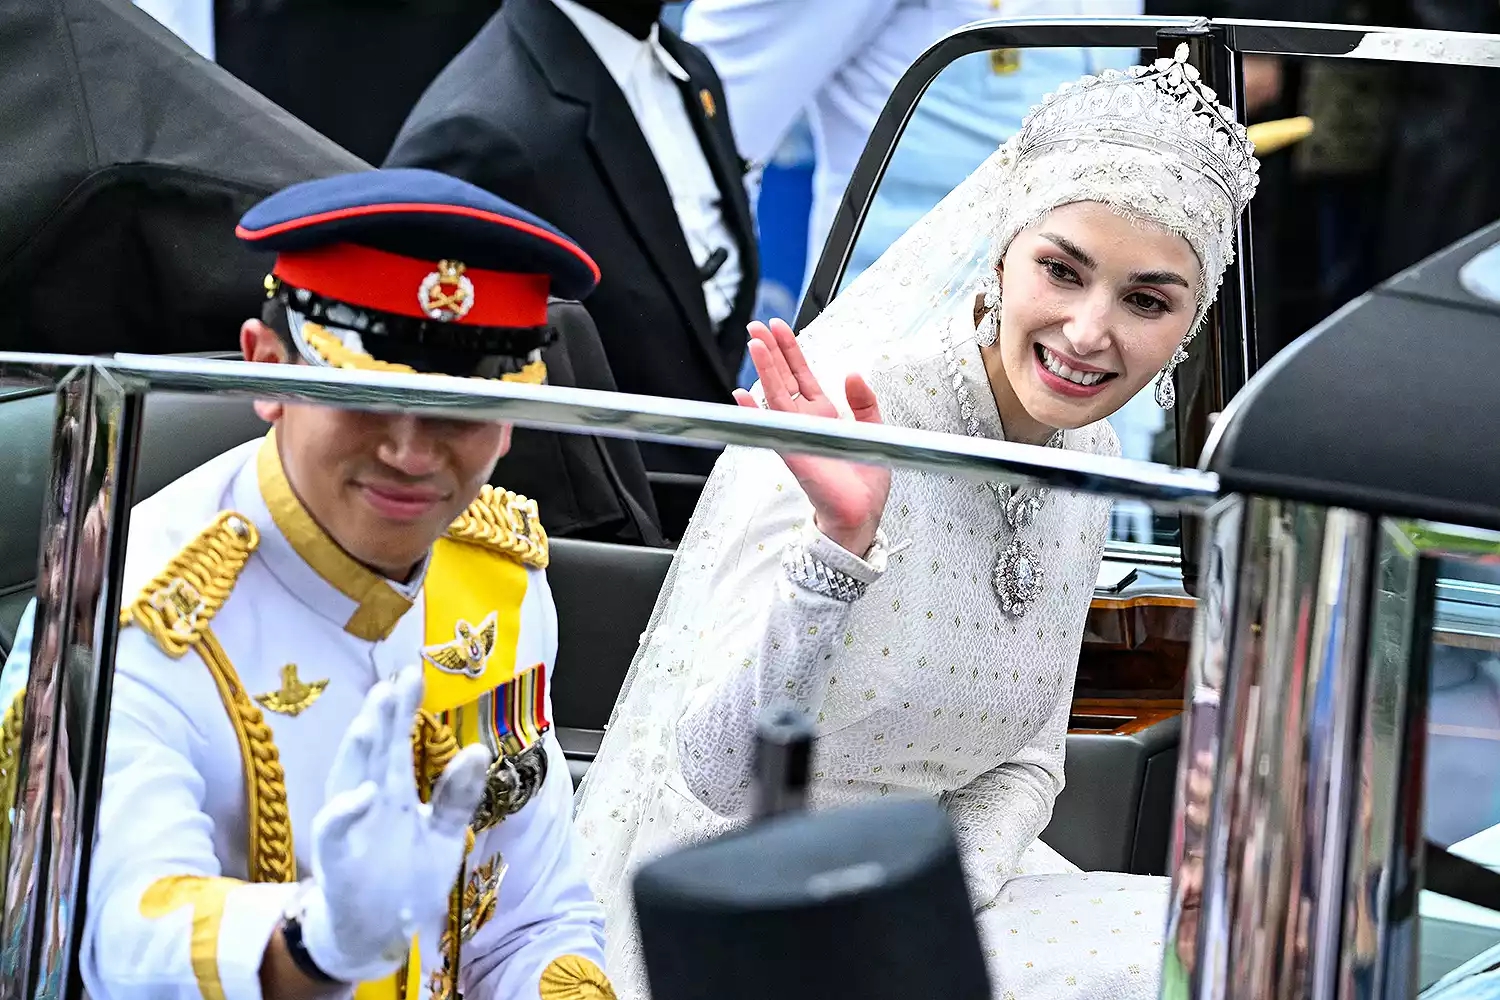 Đám cưới Hoàng tử Brunei: Cặp đôi đẹp như bước ra từ cổ tích - Ảnh 10.